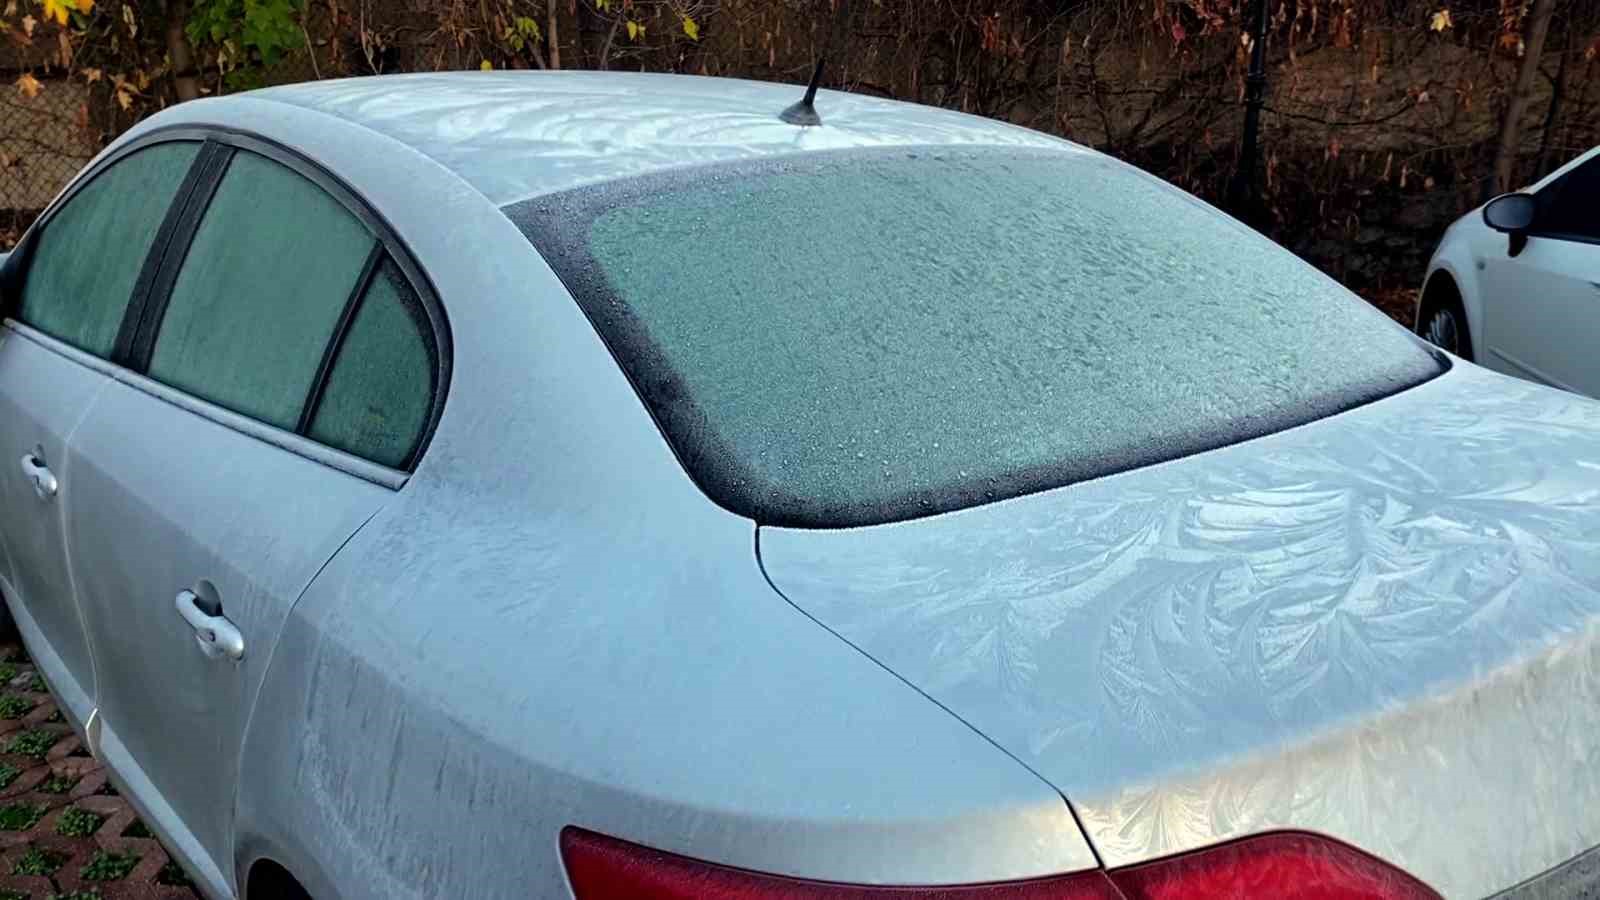 Yozgat’ta soğuk hava etkisini gösterdi, araç camları buz tuttu
